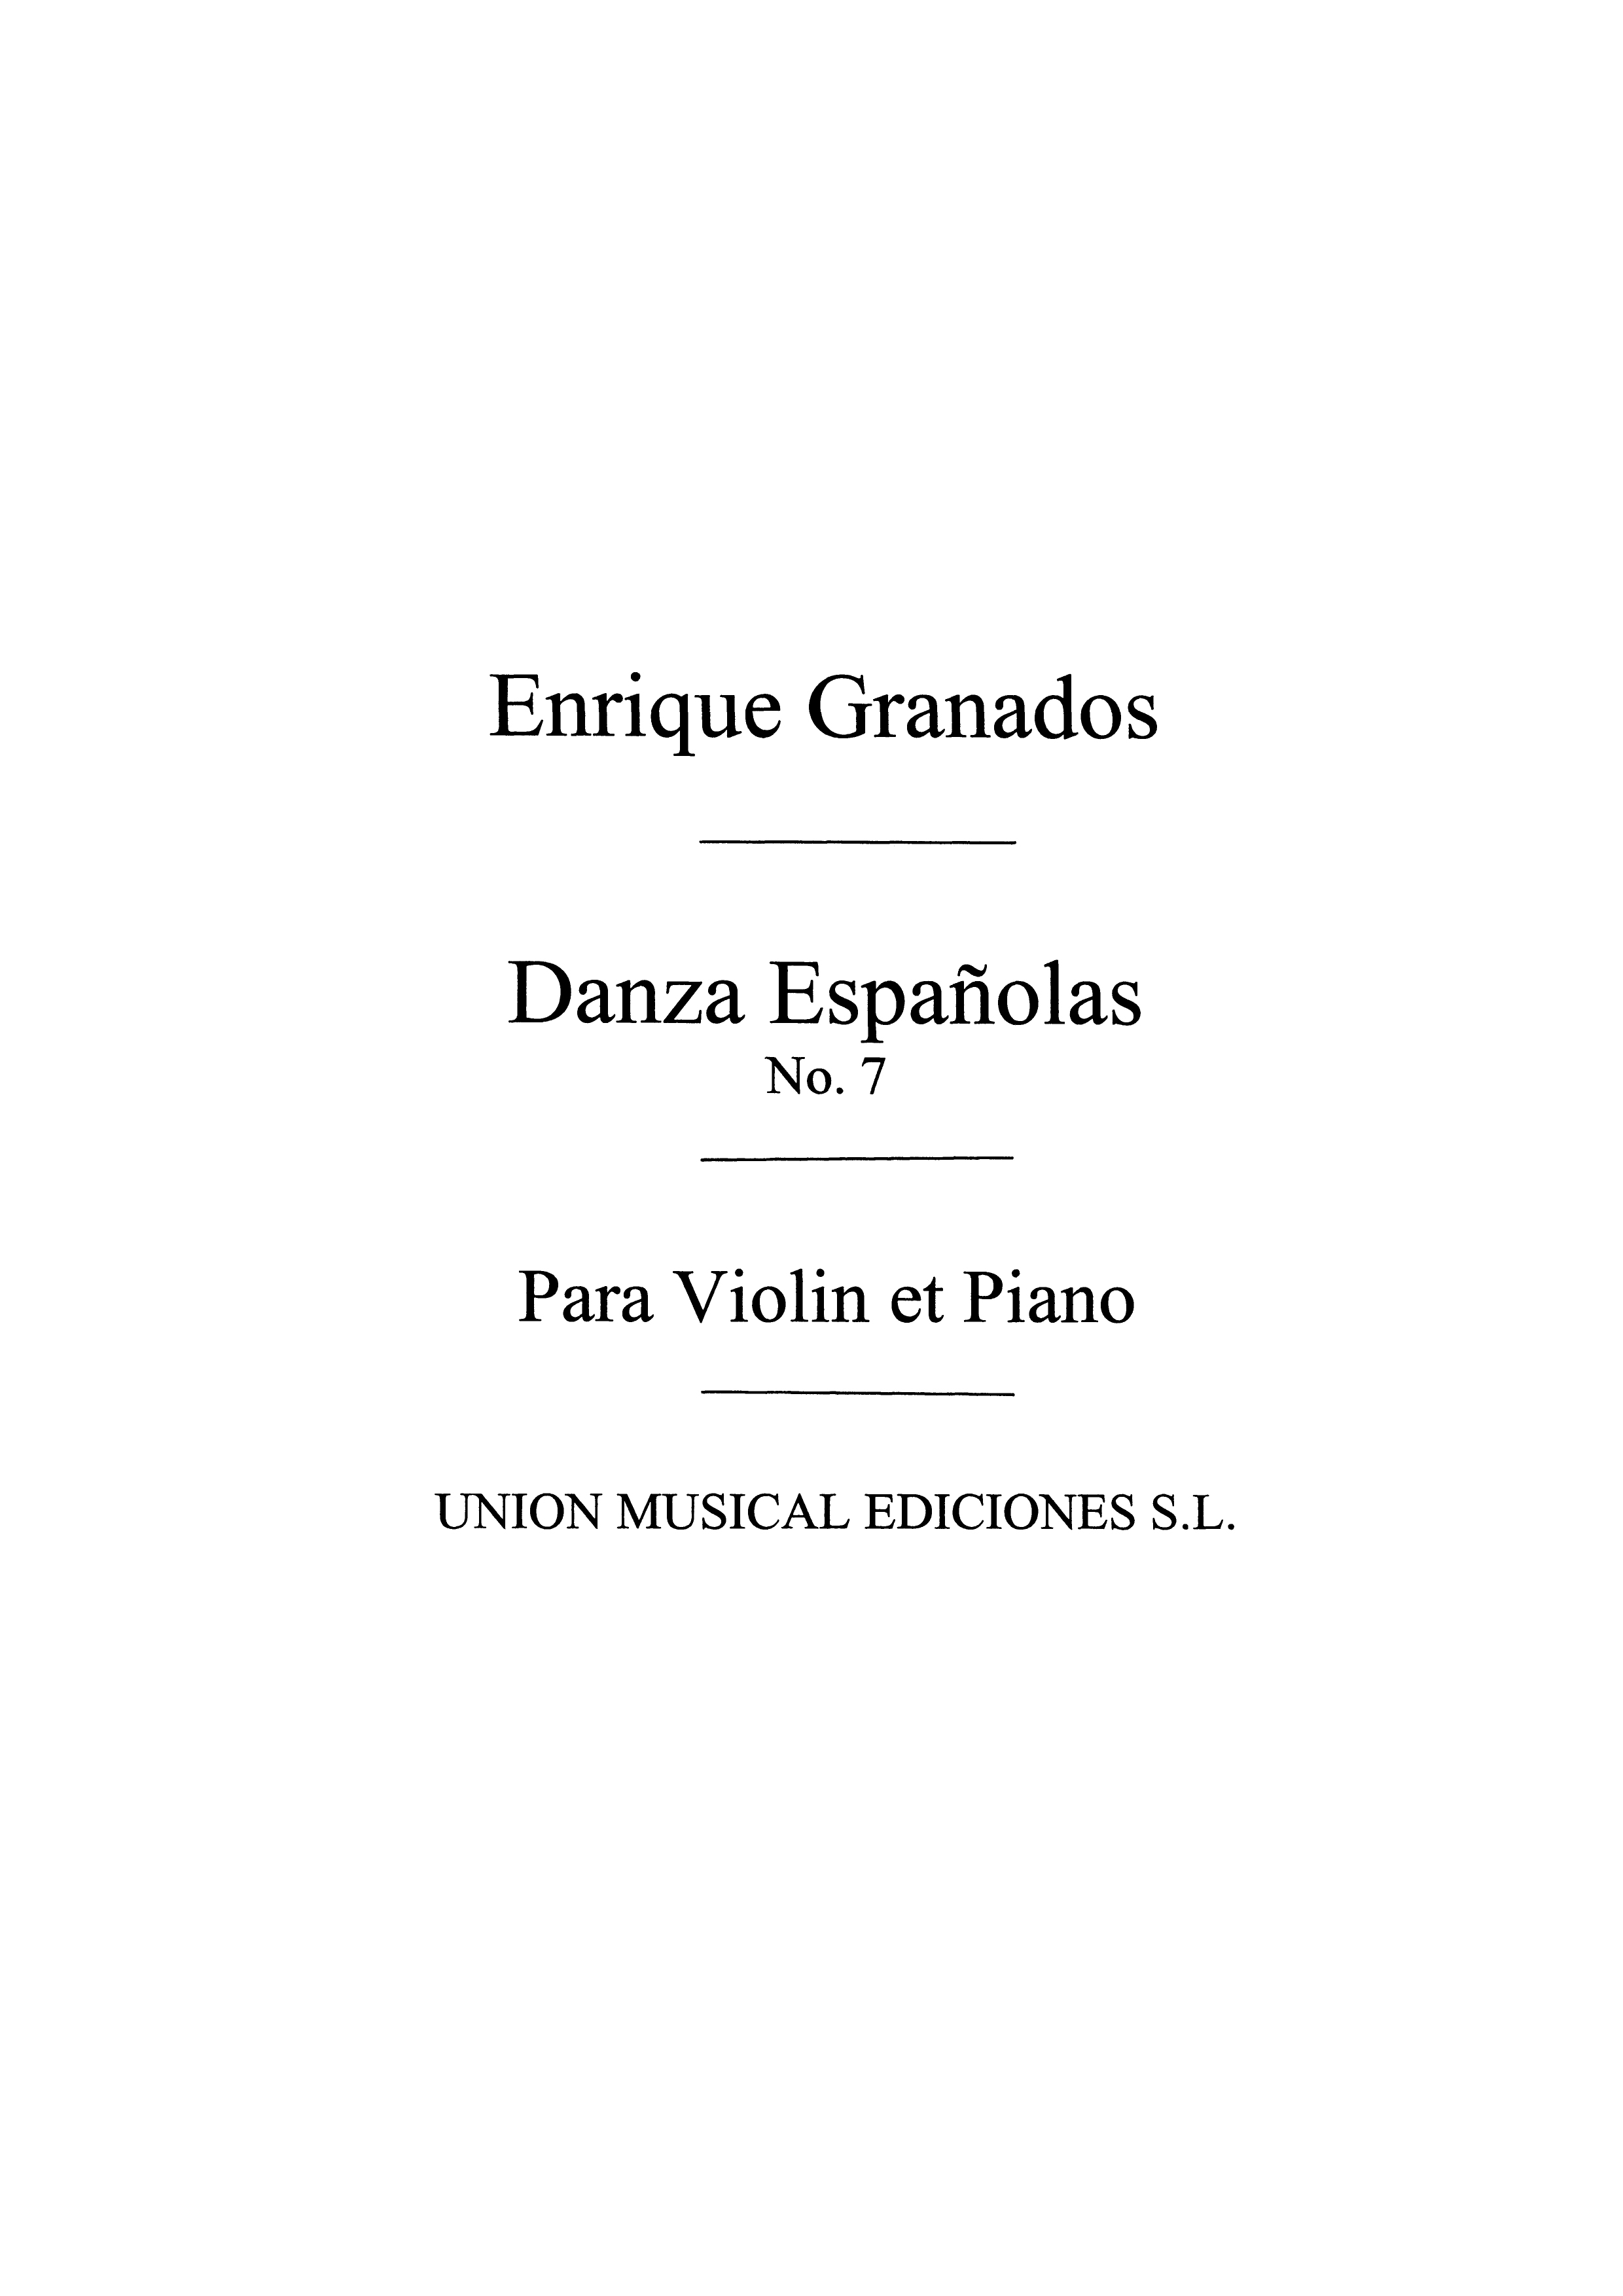 Enrique Granados: Danza Espanola No.7 Valenciana: Violin: Instrumental Work